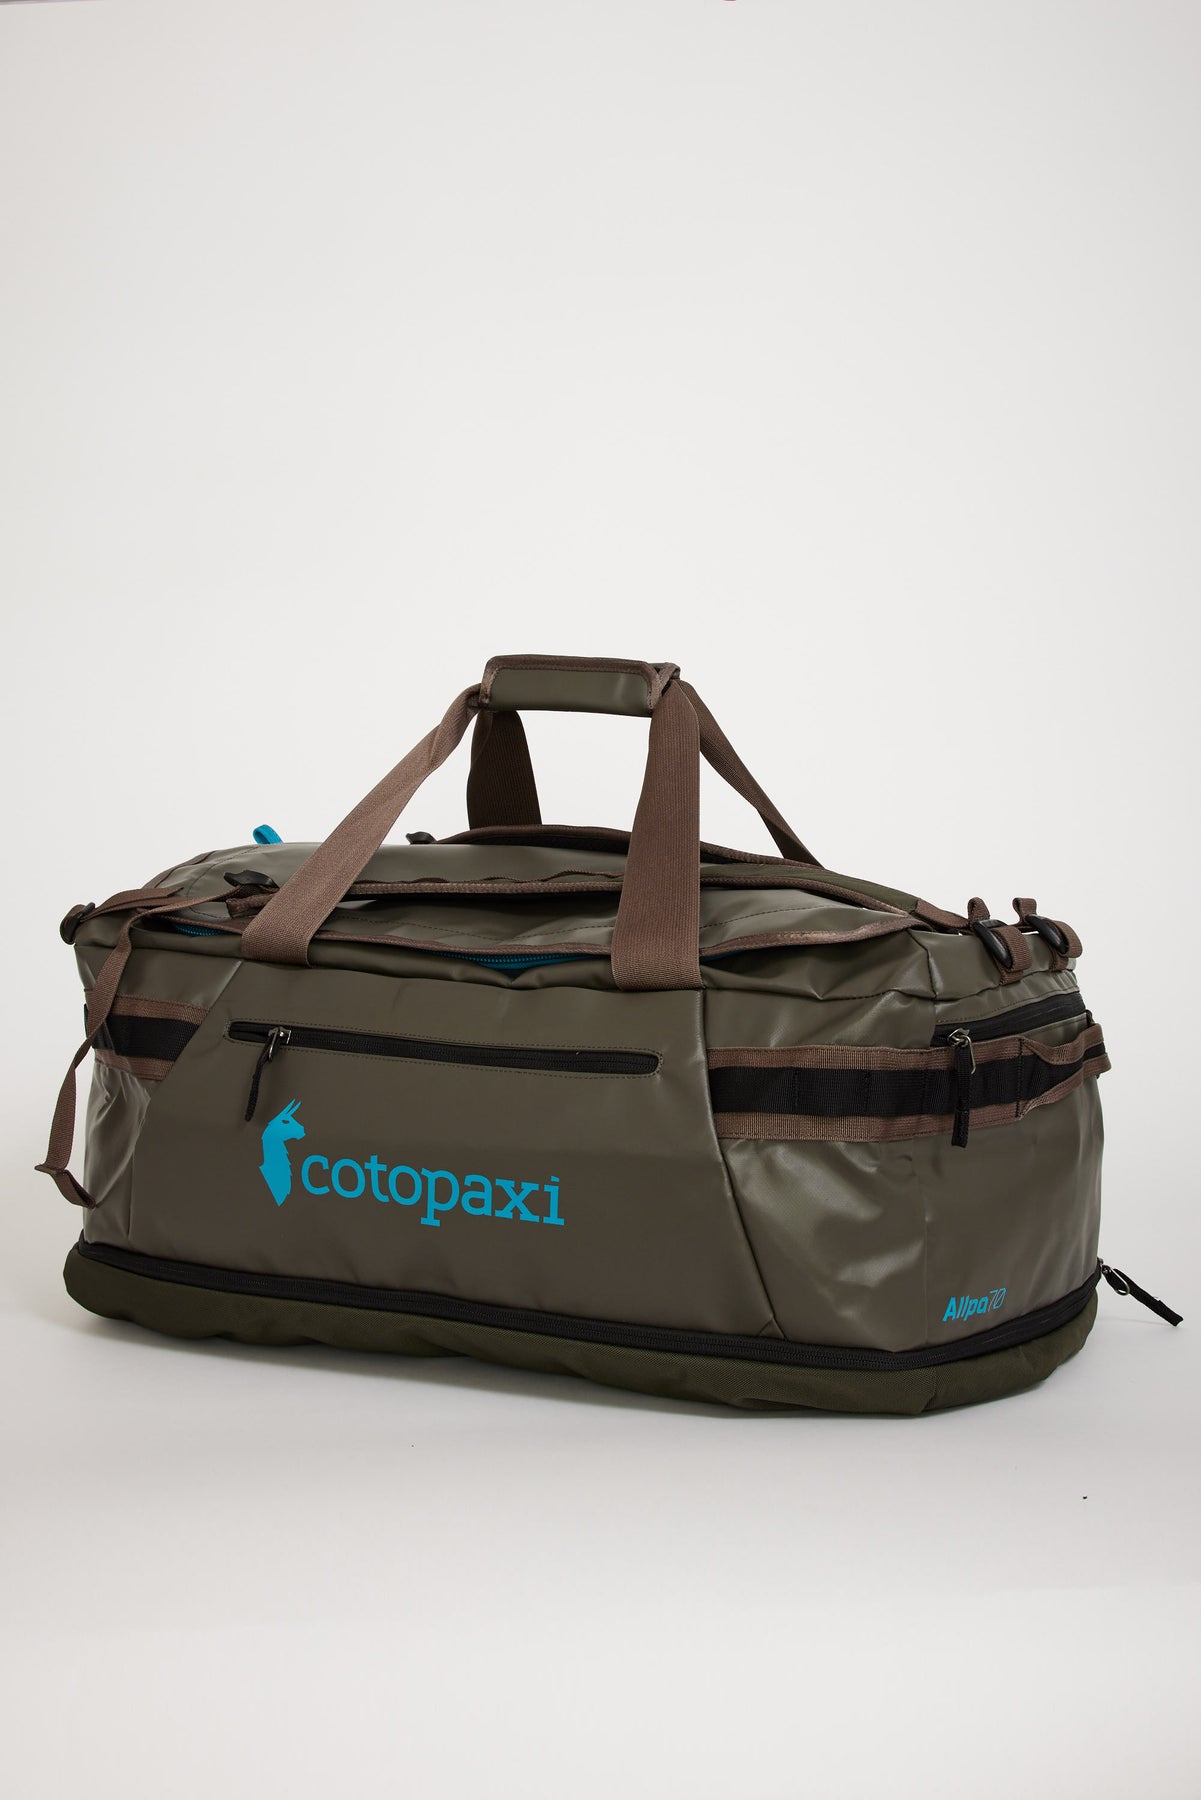  Cotopaxi Allpa 70L Duffel Bag - Iron